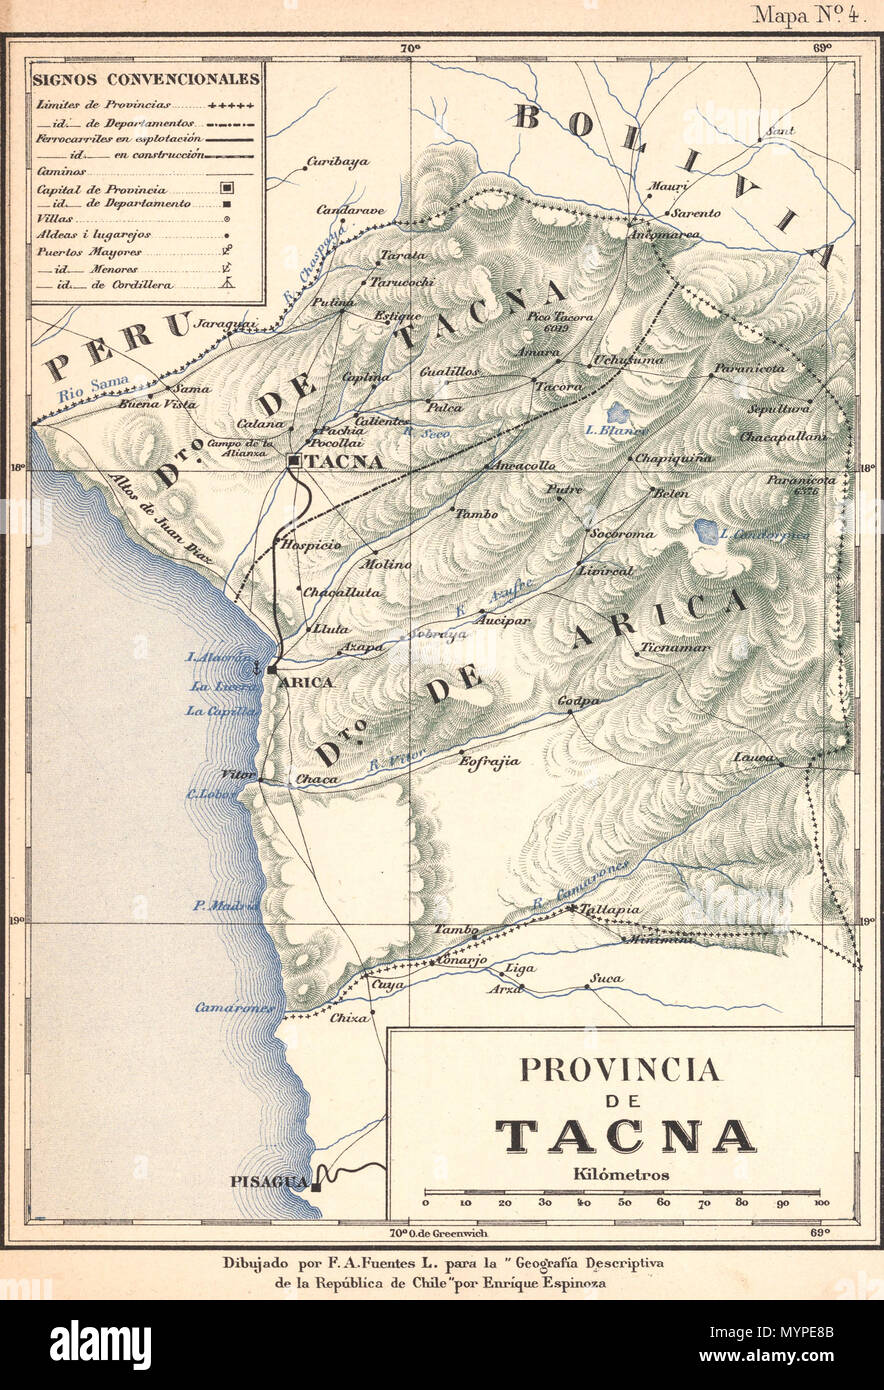 . Mapa de la antigua Provincia chilena de Tacna, hacia 1895, que se dividía en los Departamentos de Tacna y Arica, actuales Provincia de Tacna y Tarata, Departamento de Tacna (Perú) y Provincia de Arica y Parinacota, XV Región de Arica y Parinacota (Chile) . 1903. F. A. Fuentes 439 Provincia de Tacna-1895 Stock Photo